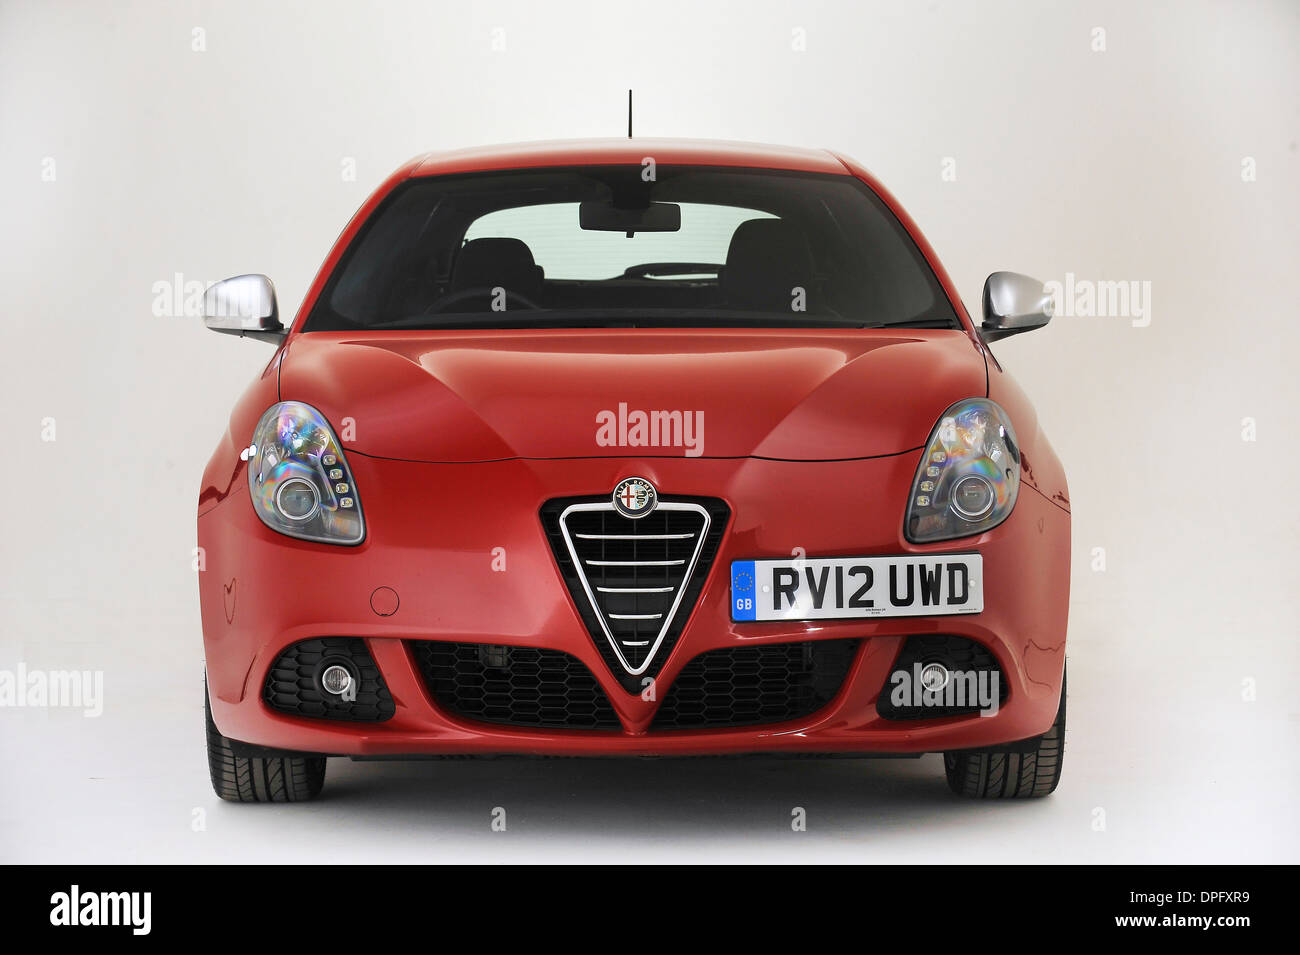 2013 Alfa Romeo Giulietta Banque D'Images